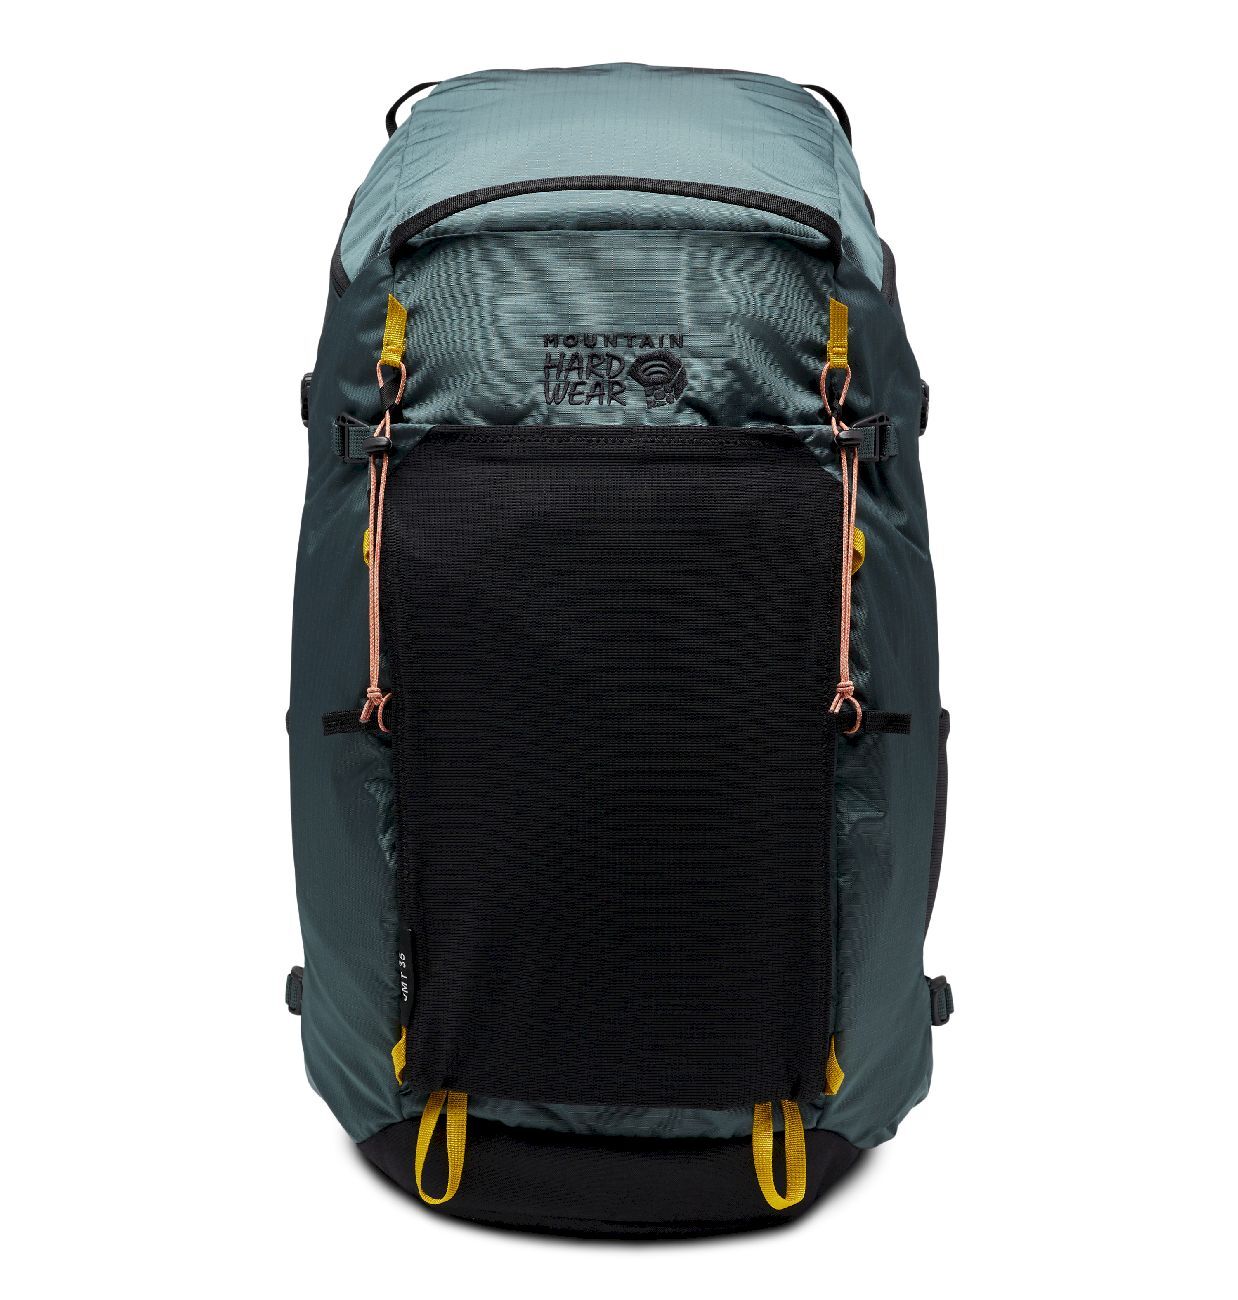 Mountain Hardwear JMT 35L Backpack  - Walking backpack